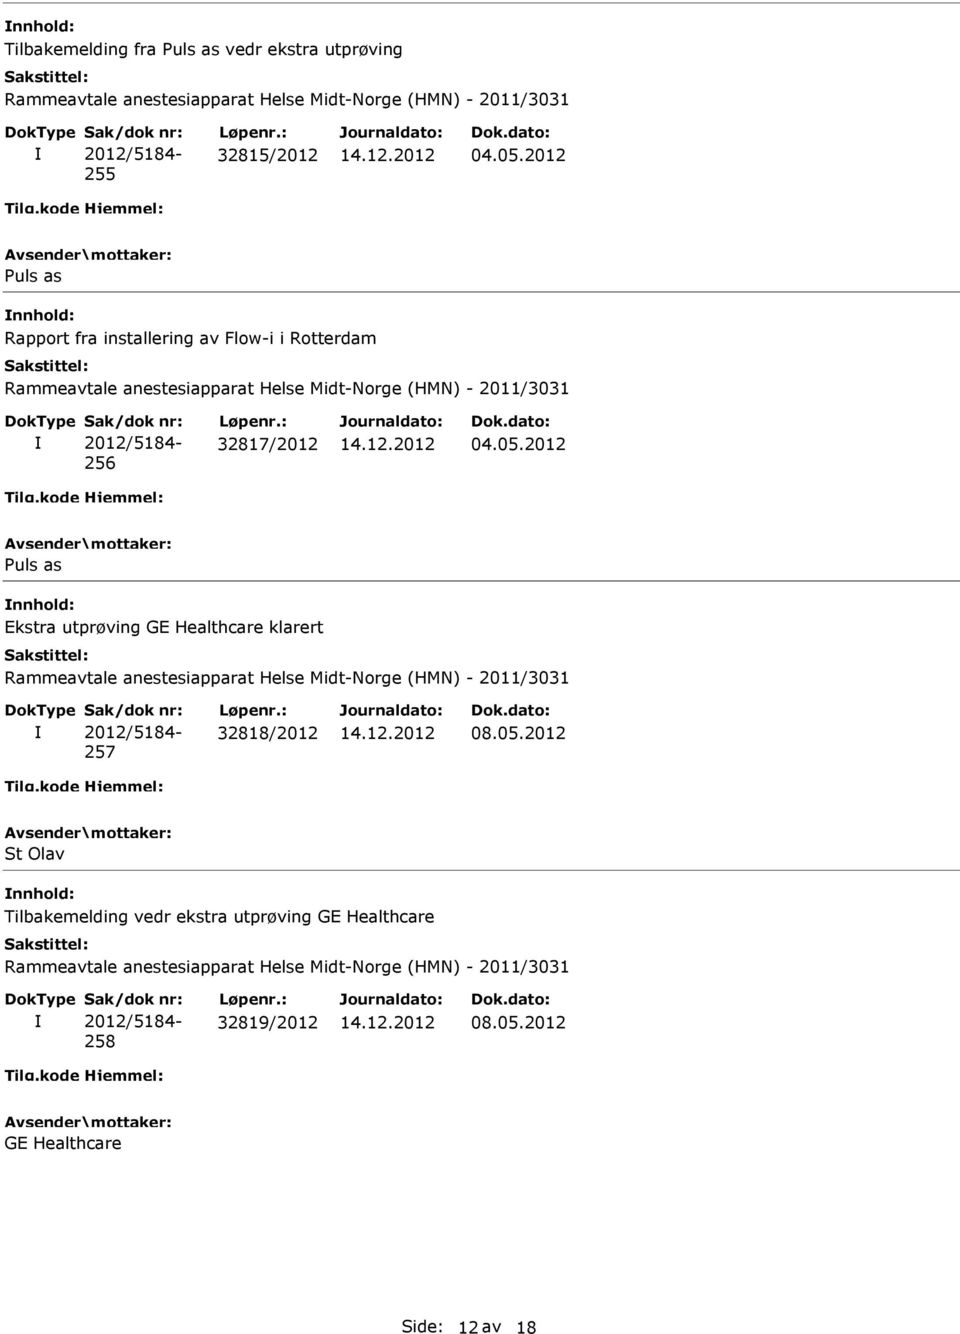 2012 Puls as nnhold: Ekstra utprøving GE Healthcare klarert 257 32818/2012 08.05.